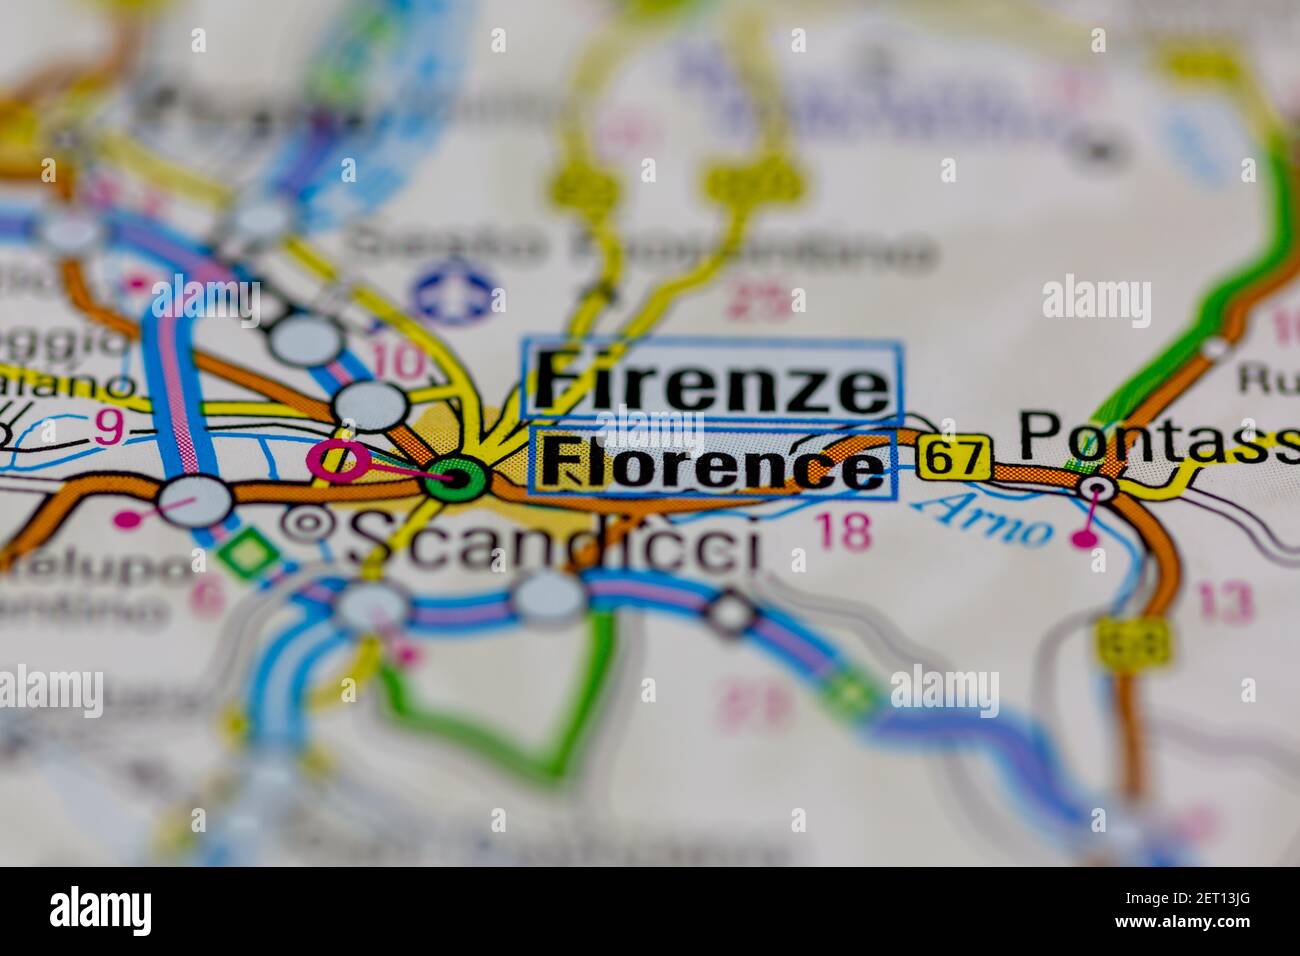 Florencia se muestra en un mapa de carreteras o mapa geográfico Foto de stock